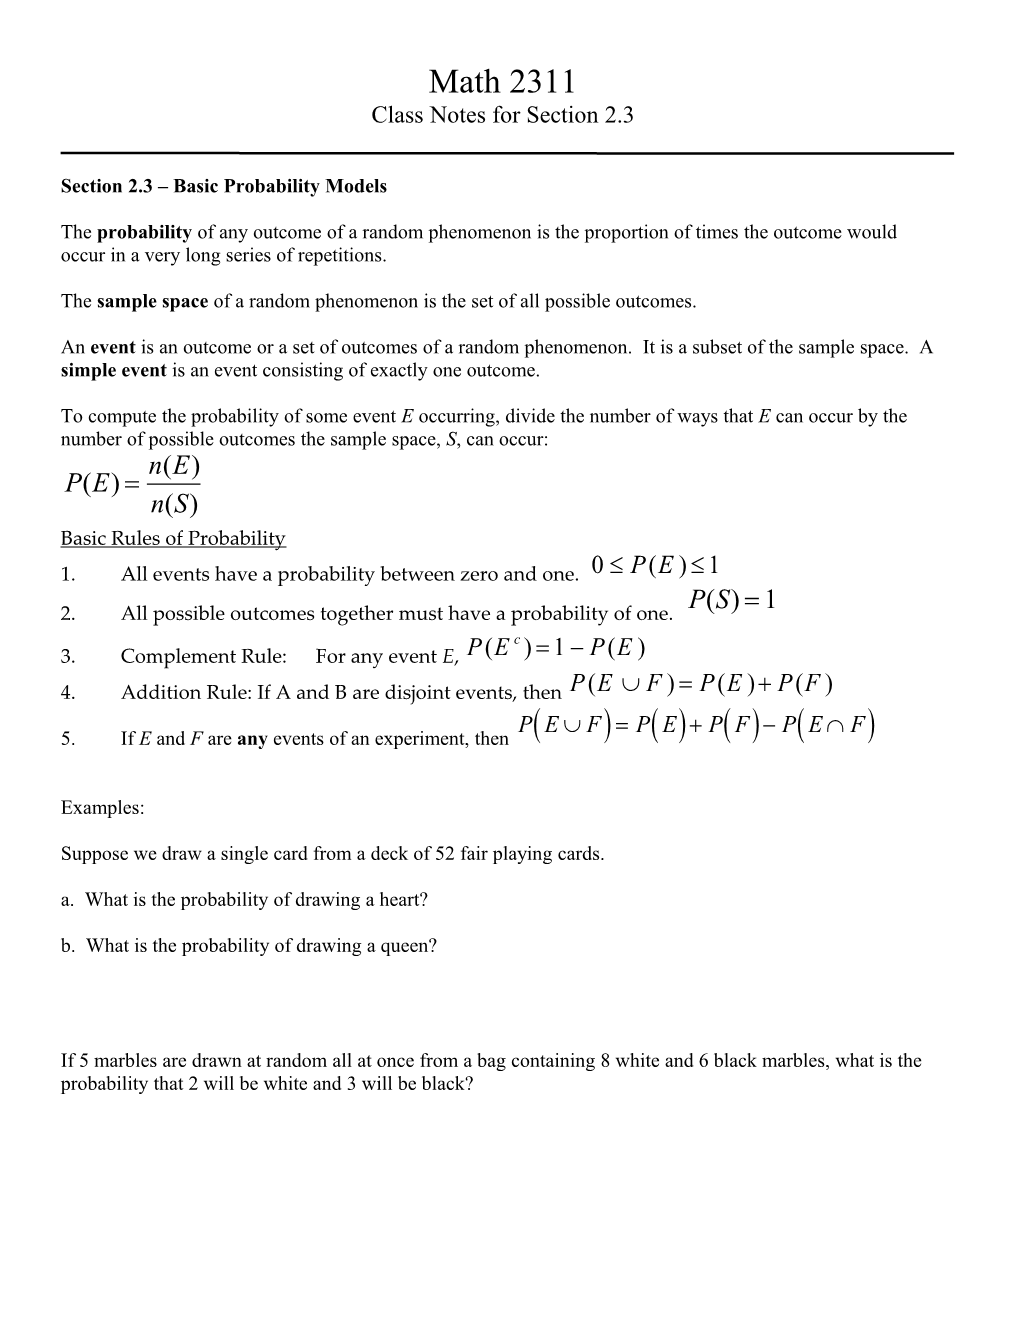 Section 2.3 Basic Probability Models